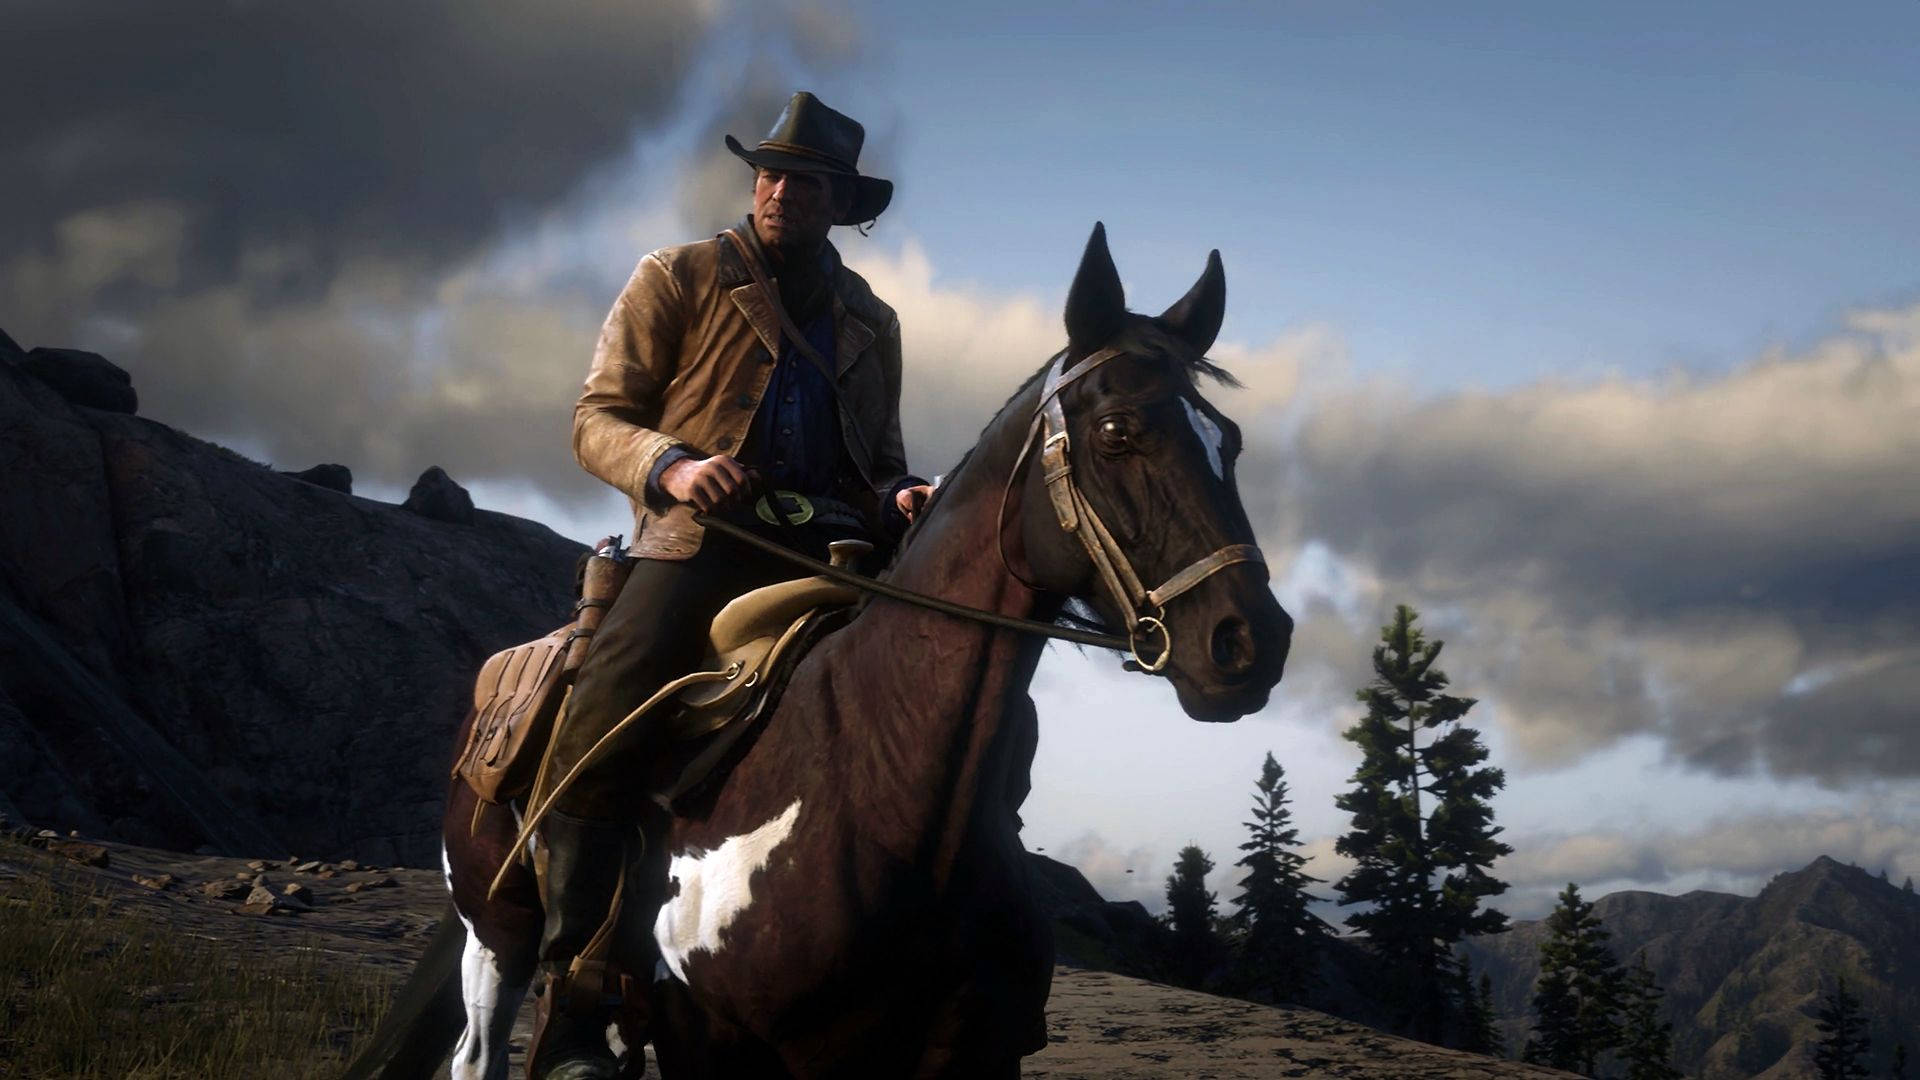 Erkundensie Den Wilden Westen Auf Einem Pferd In Red Dead Redemption 2. Wallpaper